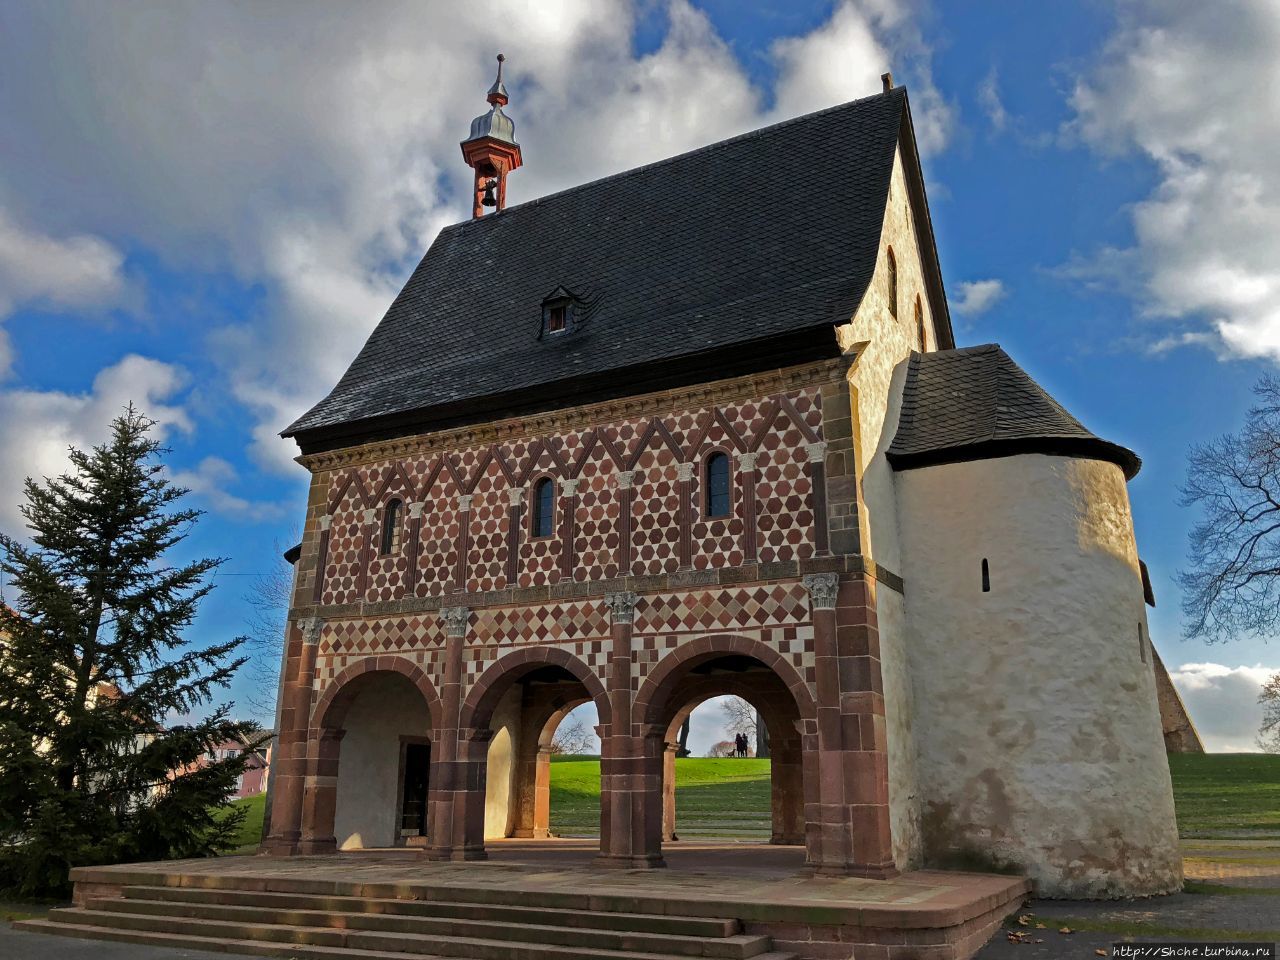 Монастырь и надвратная капелла в городе Лорш Лорш, Германия